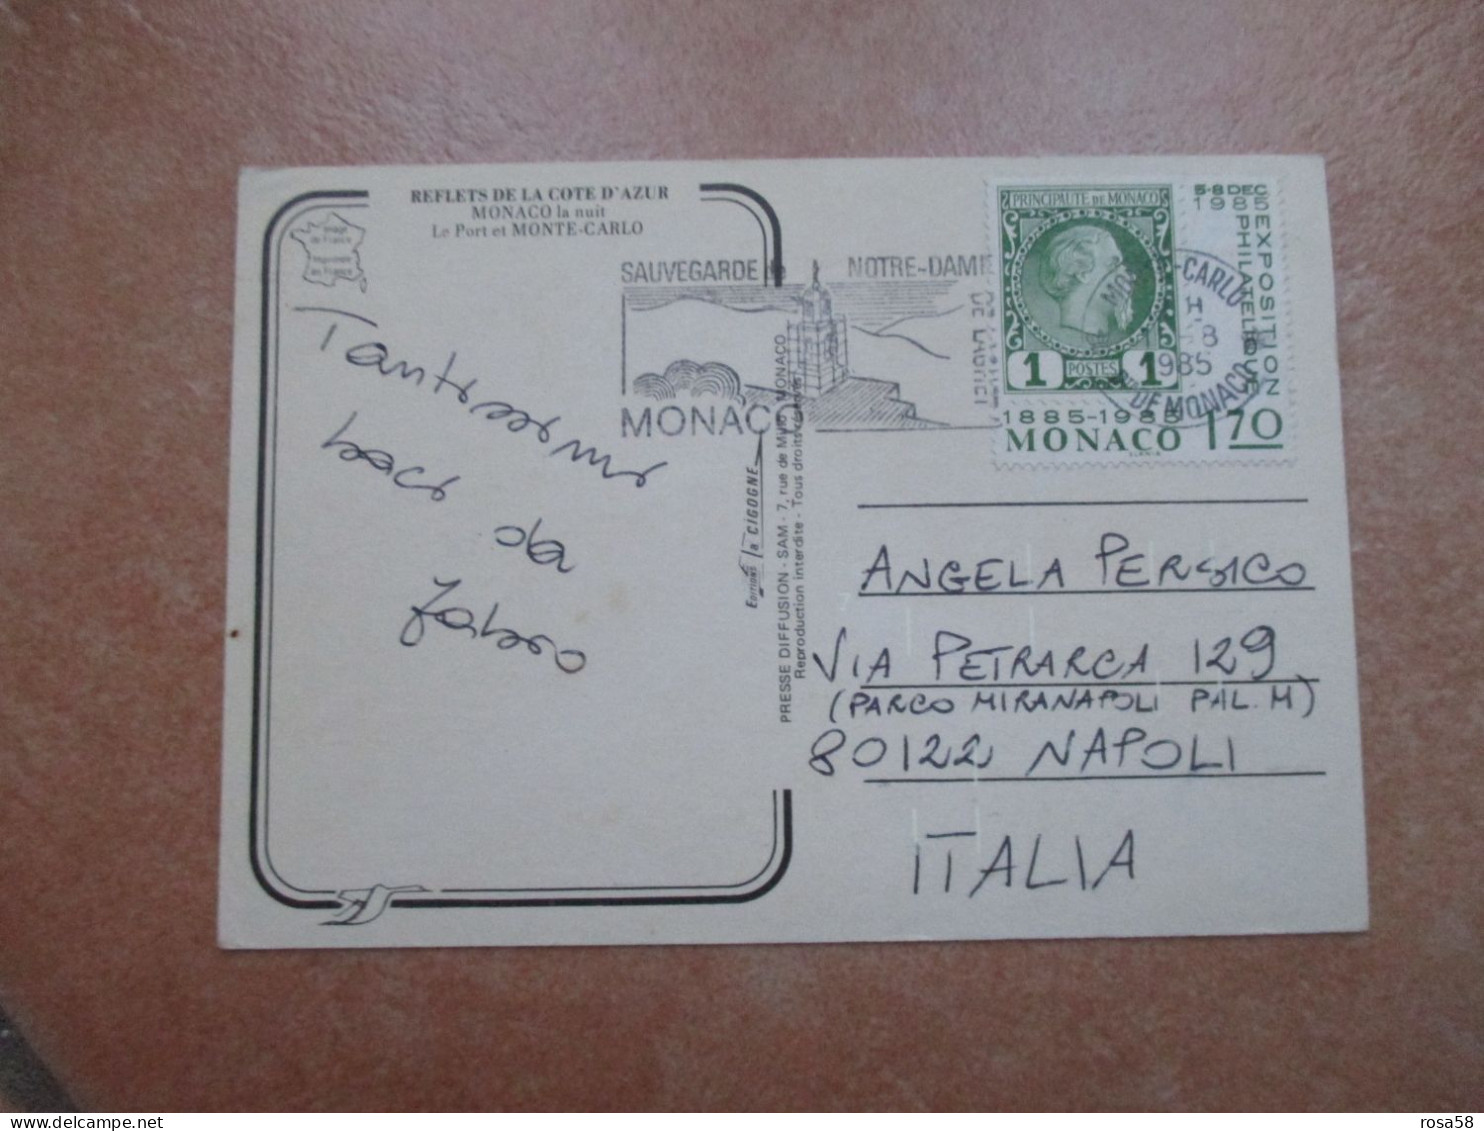 1985 Annullo Meccanico SAUVEGARDE Notre Dame Su F.bollo 1,70 1885 1985 - Briefe U. Dokumente